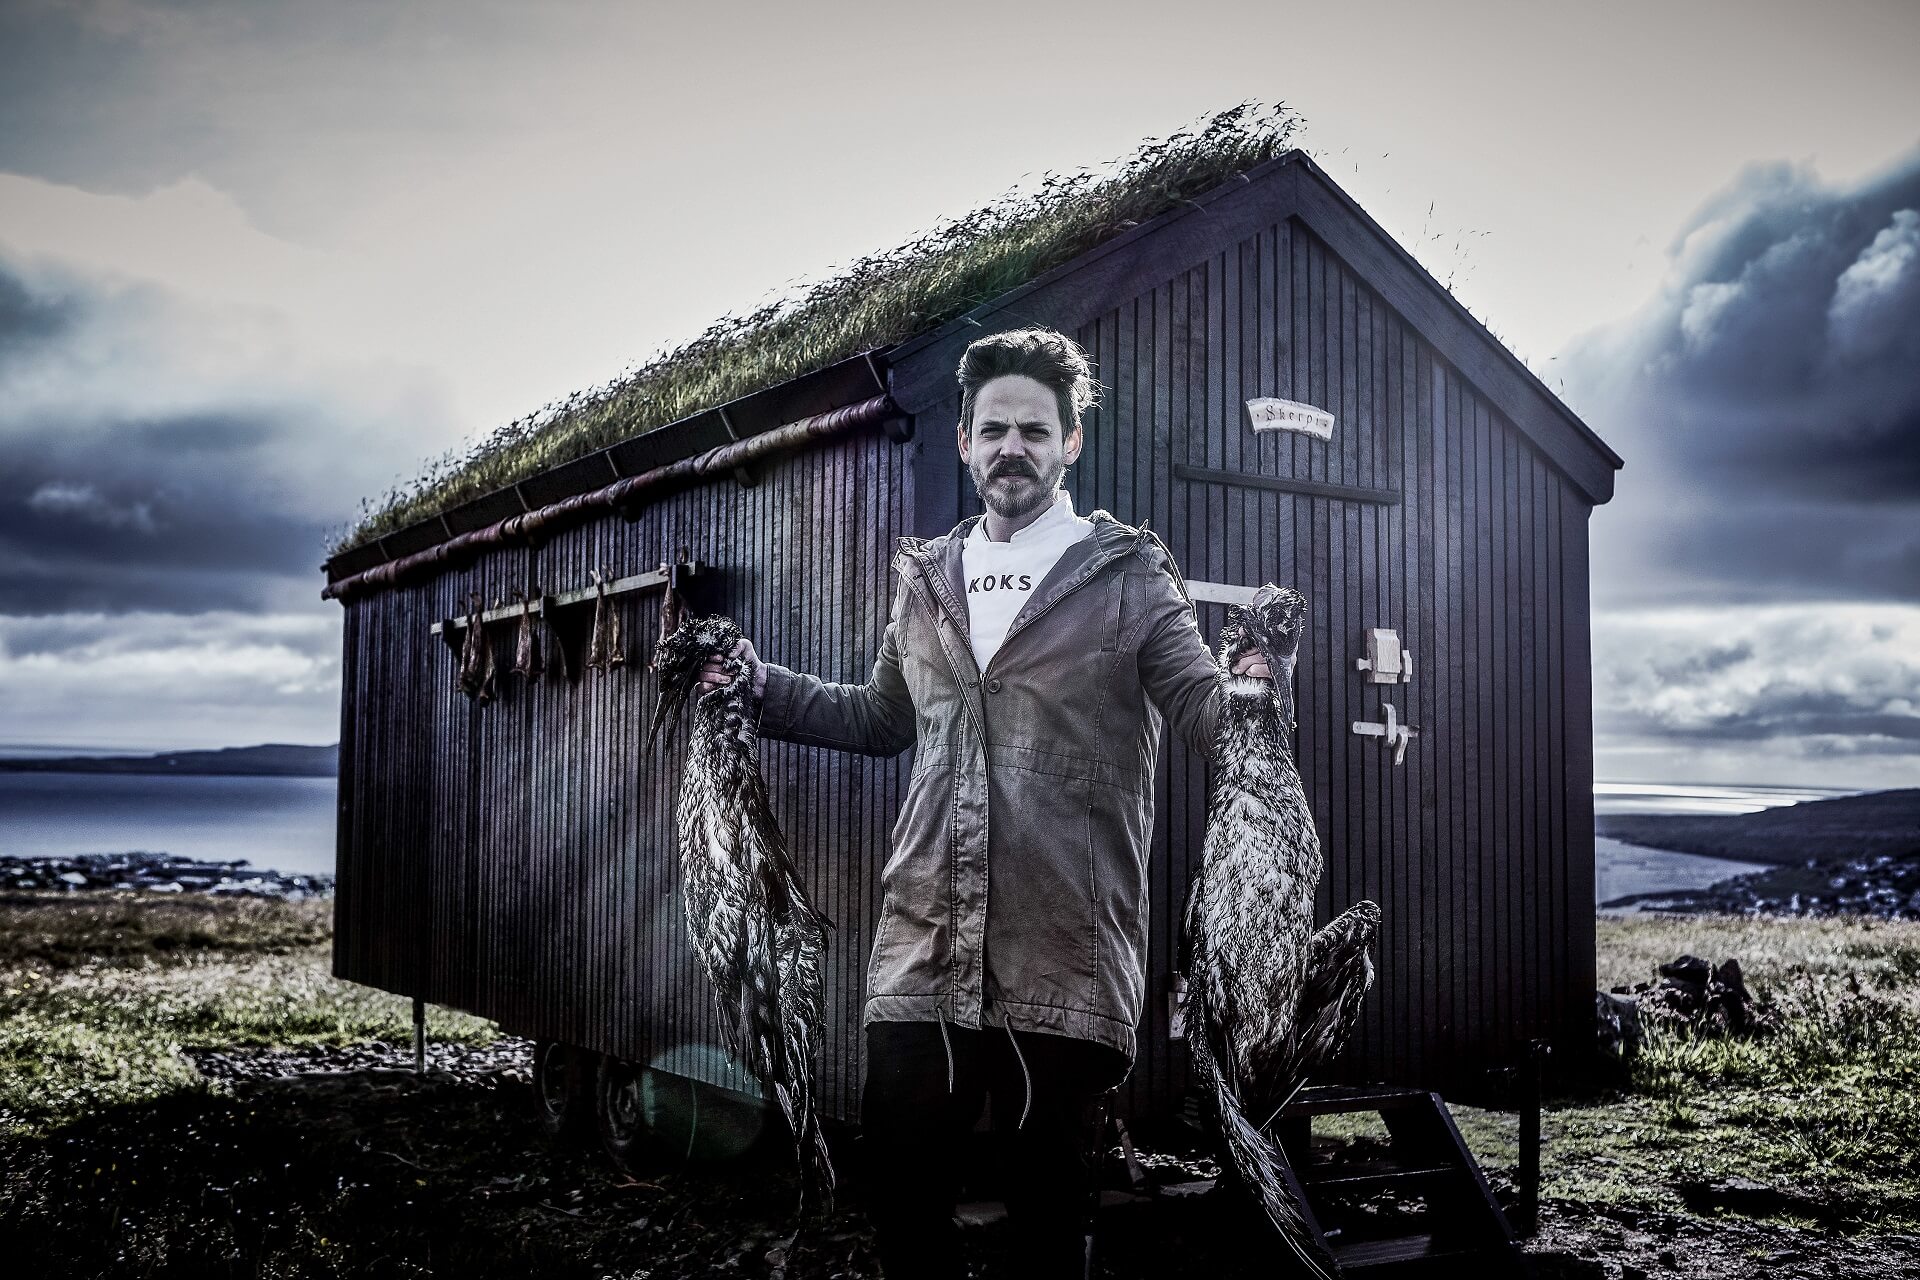 Poul Andrias Ziska lebt Nachhaltigkeit. Er kocht mit dem was auf der Insel wächst